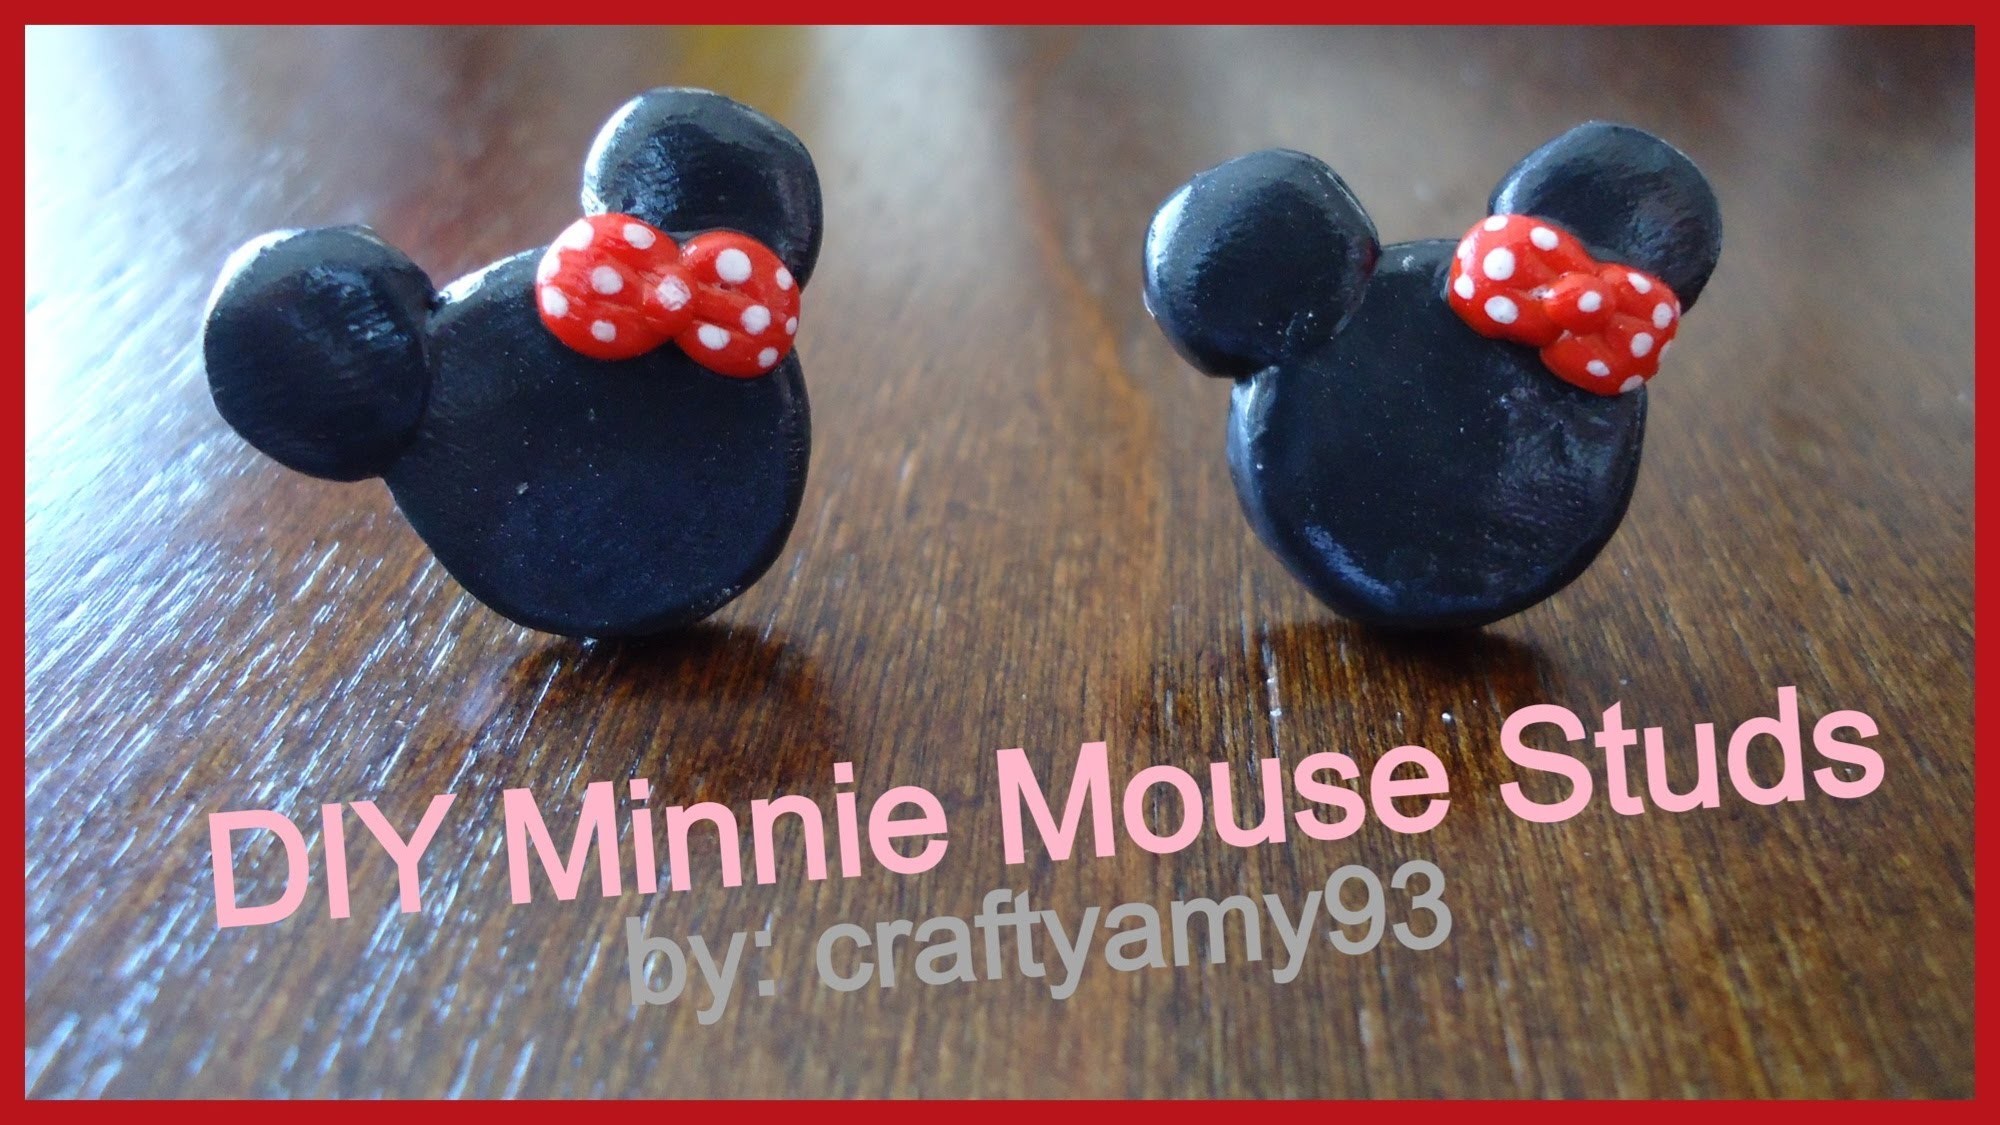 DIY Minnie Mouse Stud Earrings (using Sculpey)